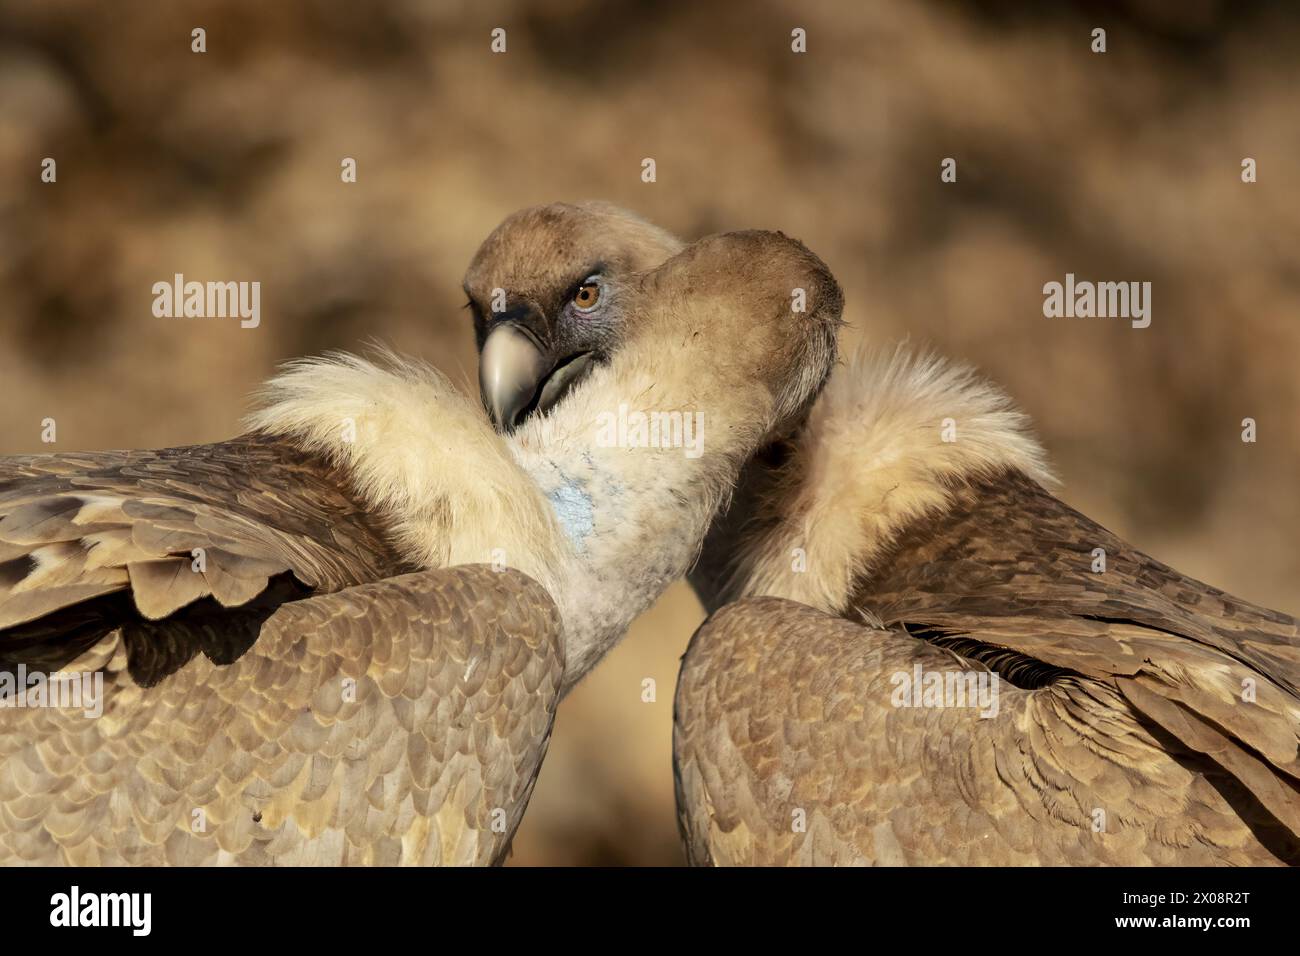 Deux vautours griffons partagent un moment tendre, leurs têtes se touchant doucement, sur un fond flou de tons chauds et terreux Banque D'Images